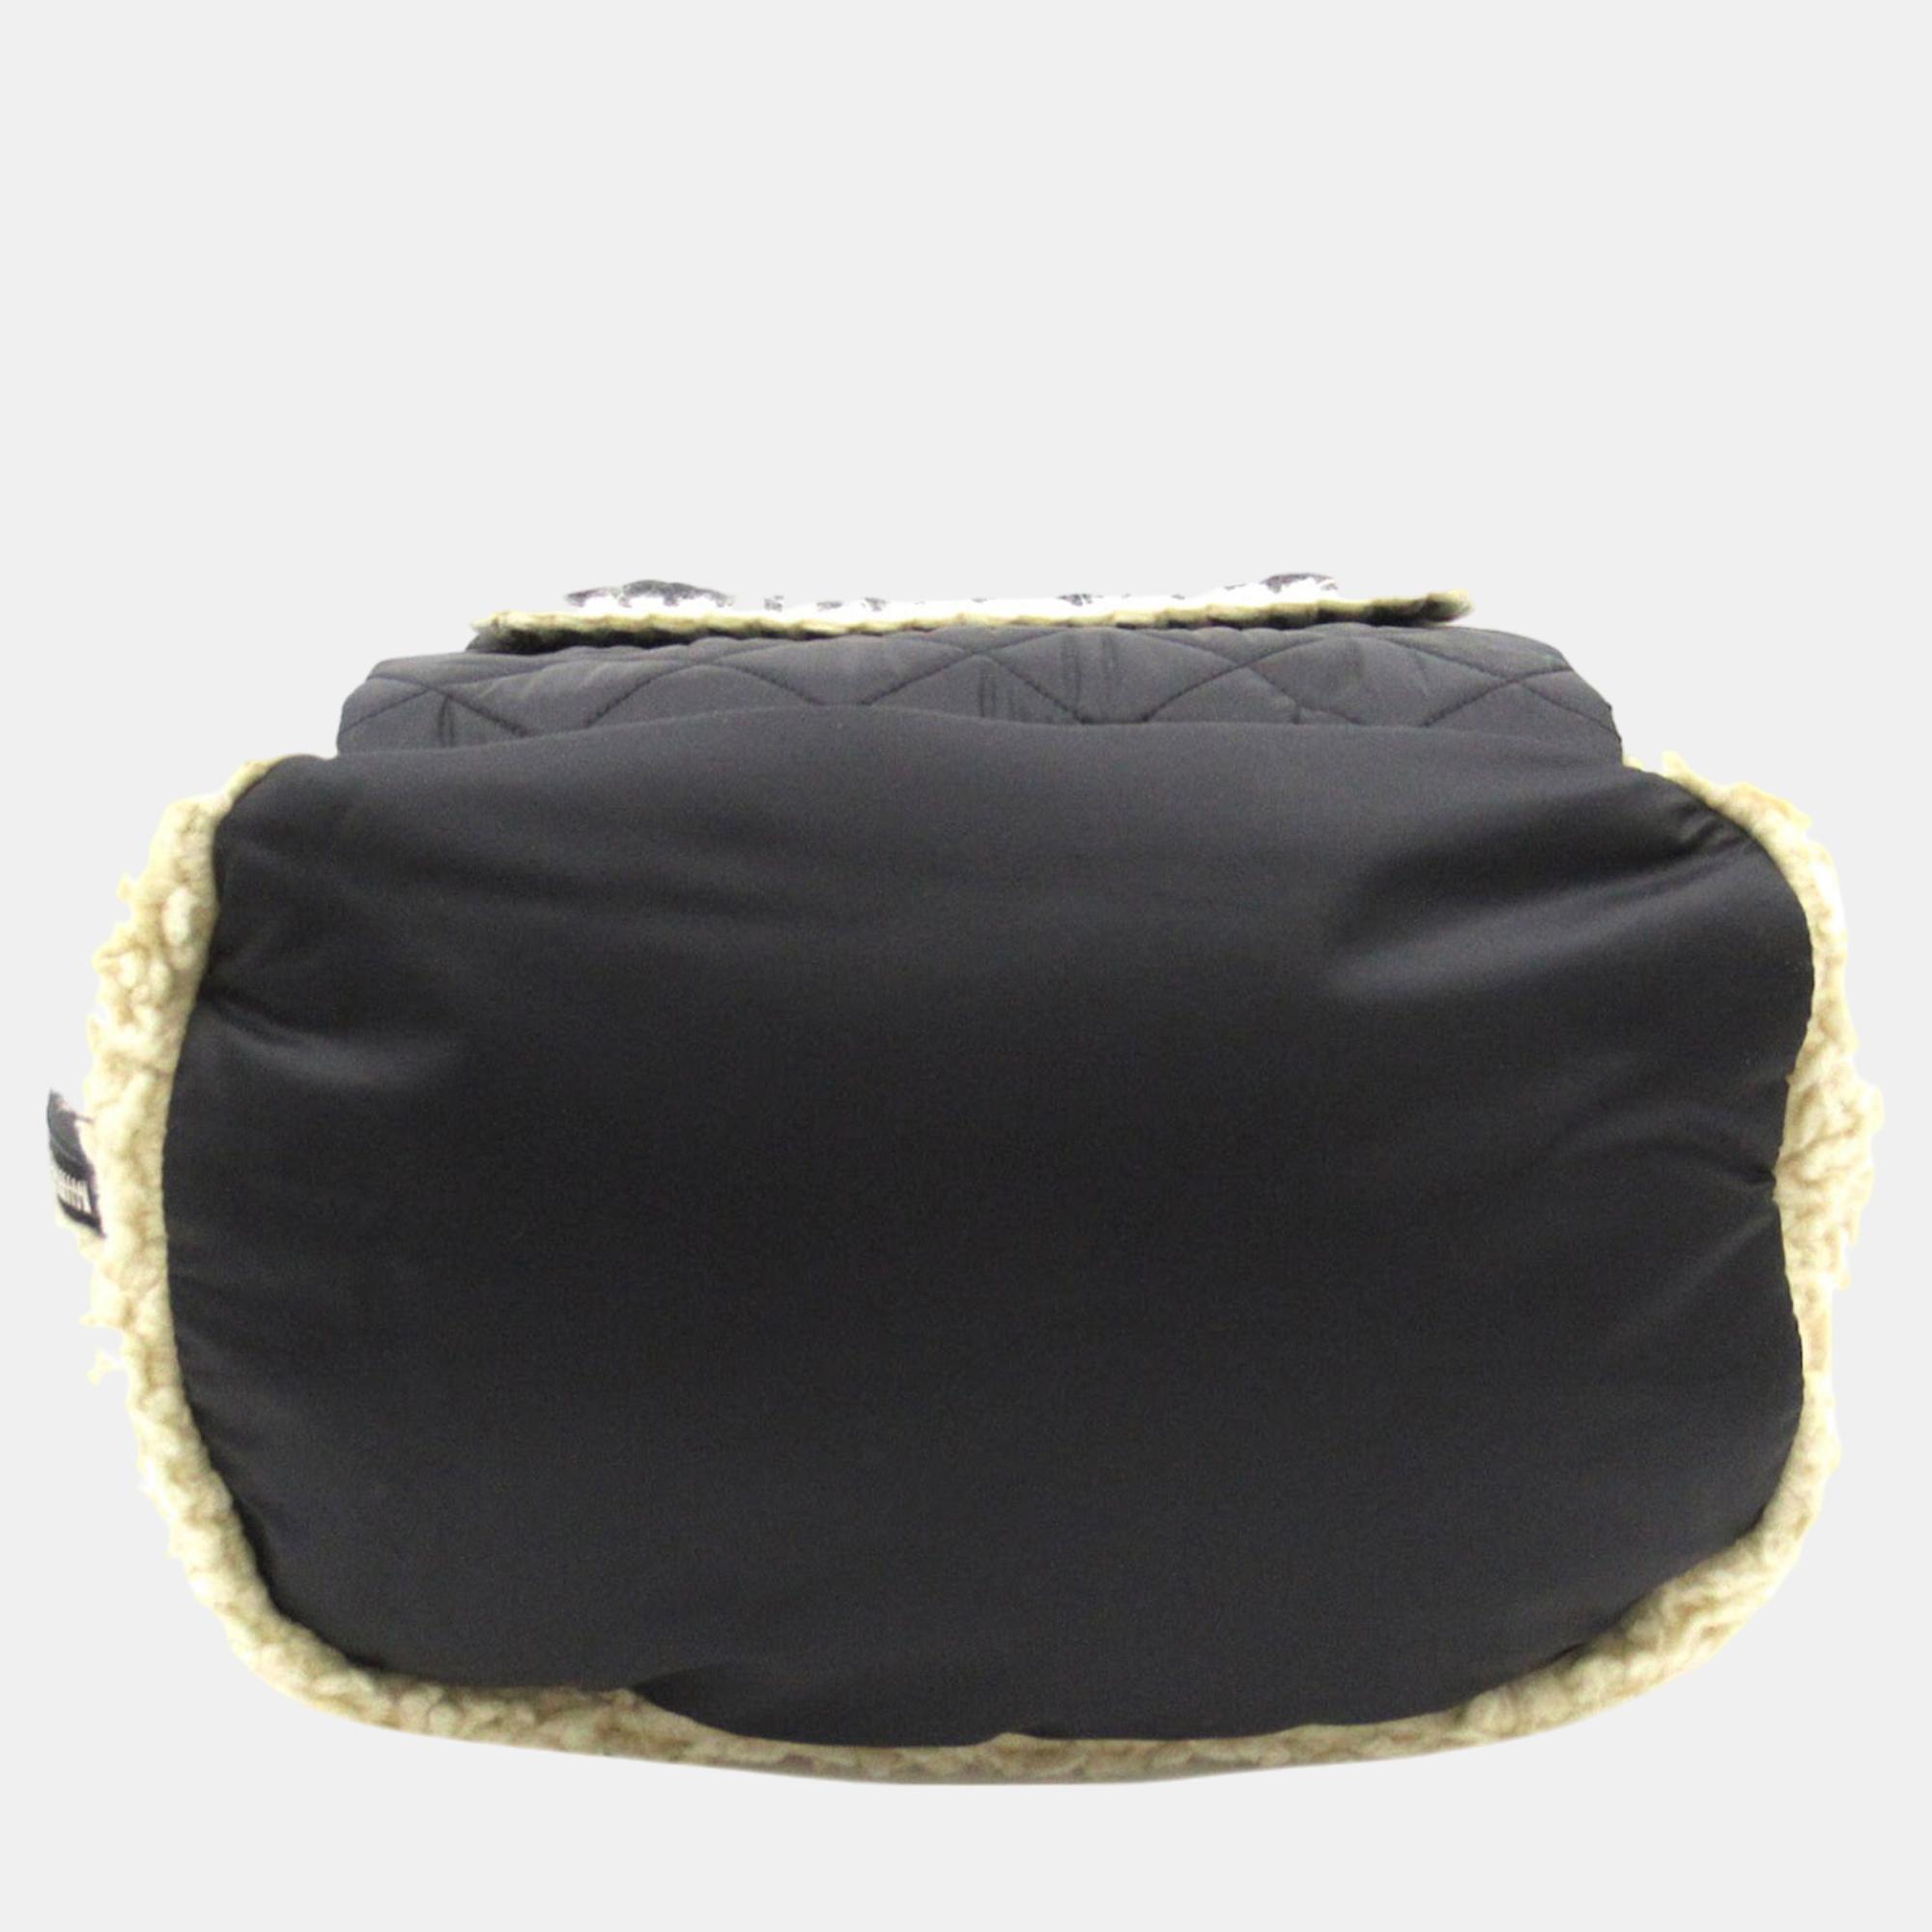 Chanel Black/White Mouton Drawstring Tote Bag